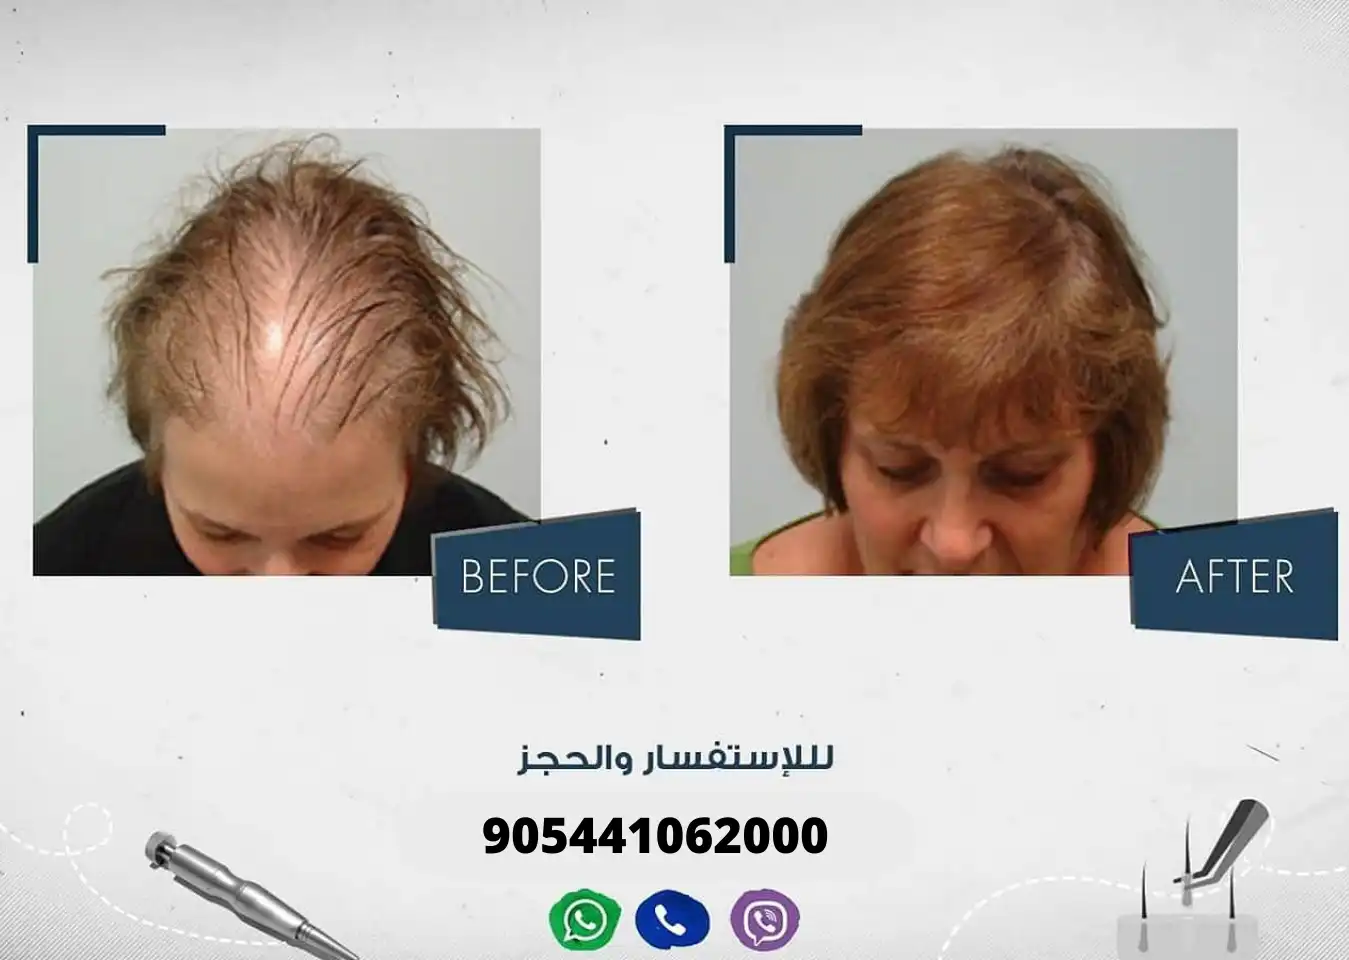 سيدة تعاني من الصلع قبل وبعد إجراء عملية زراعة الشعر في مركز آرت لزراعة الشعر